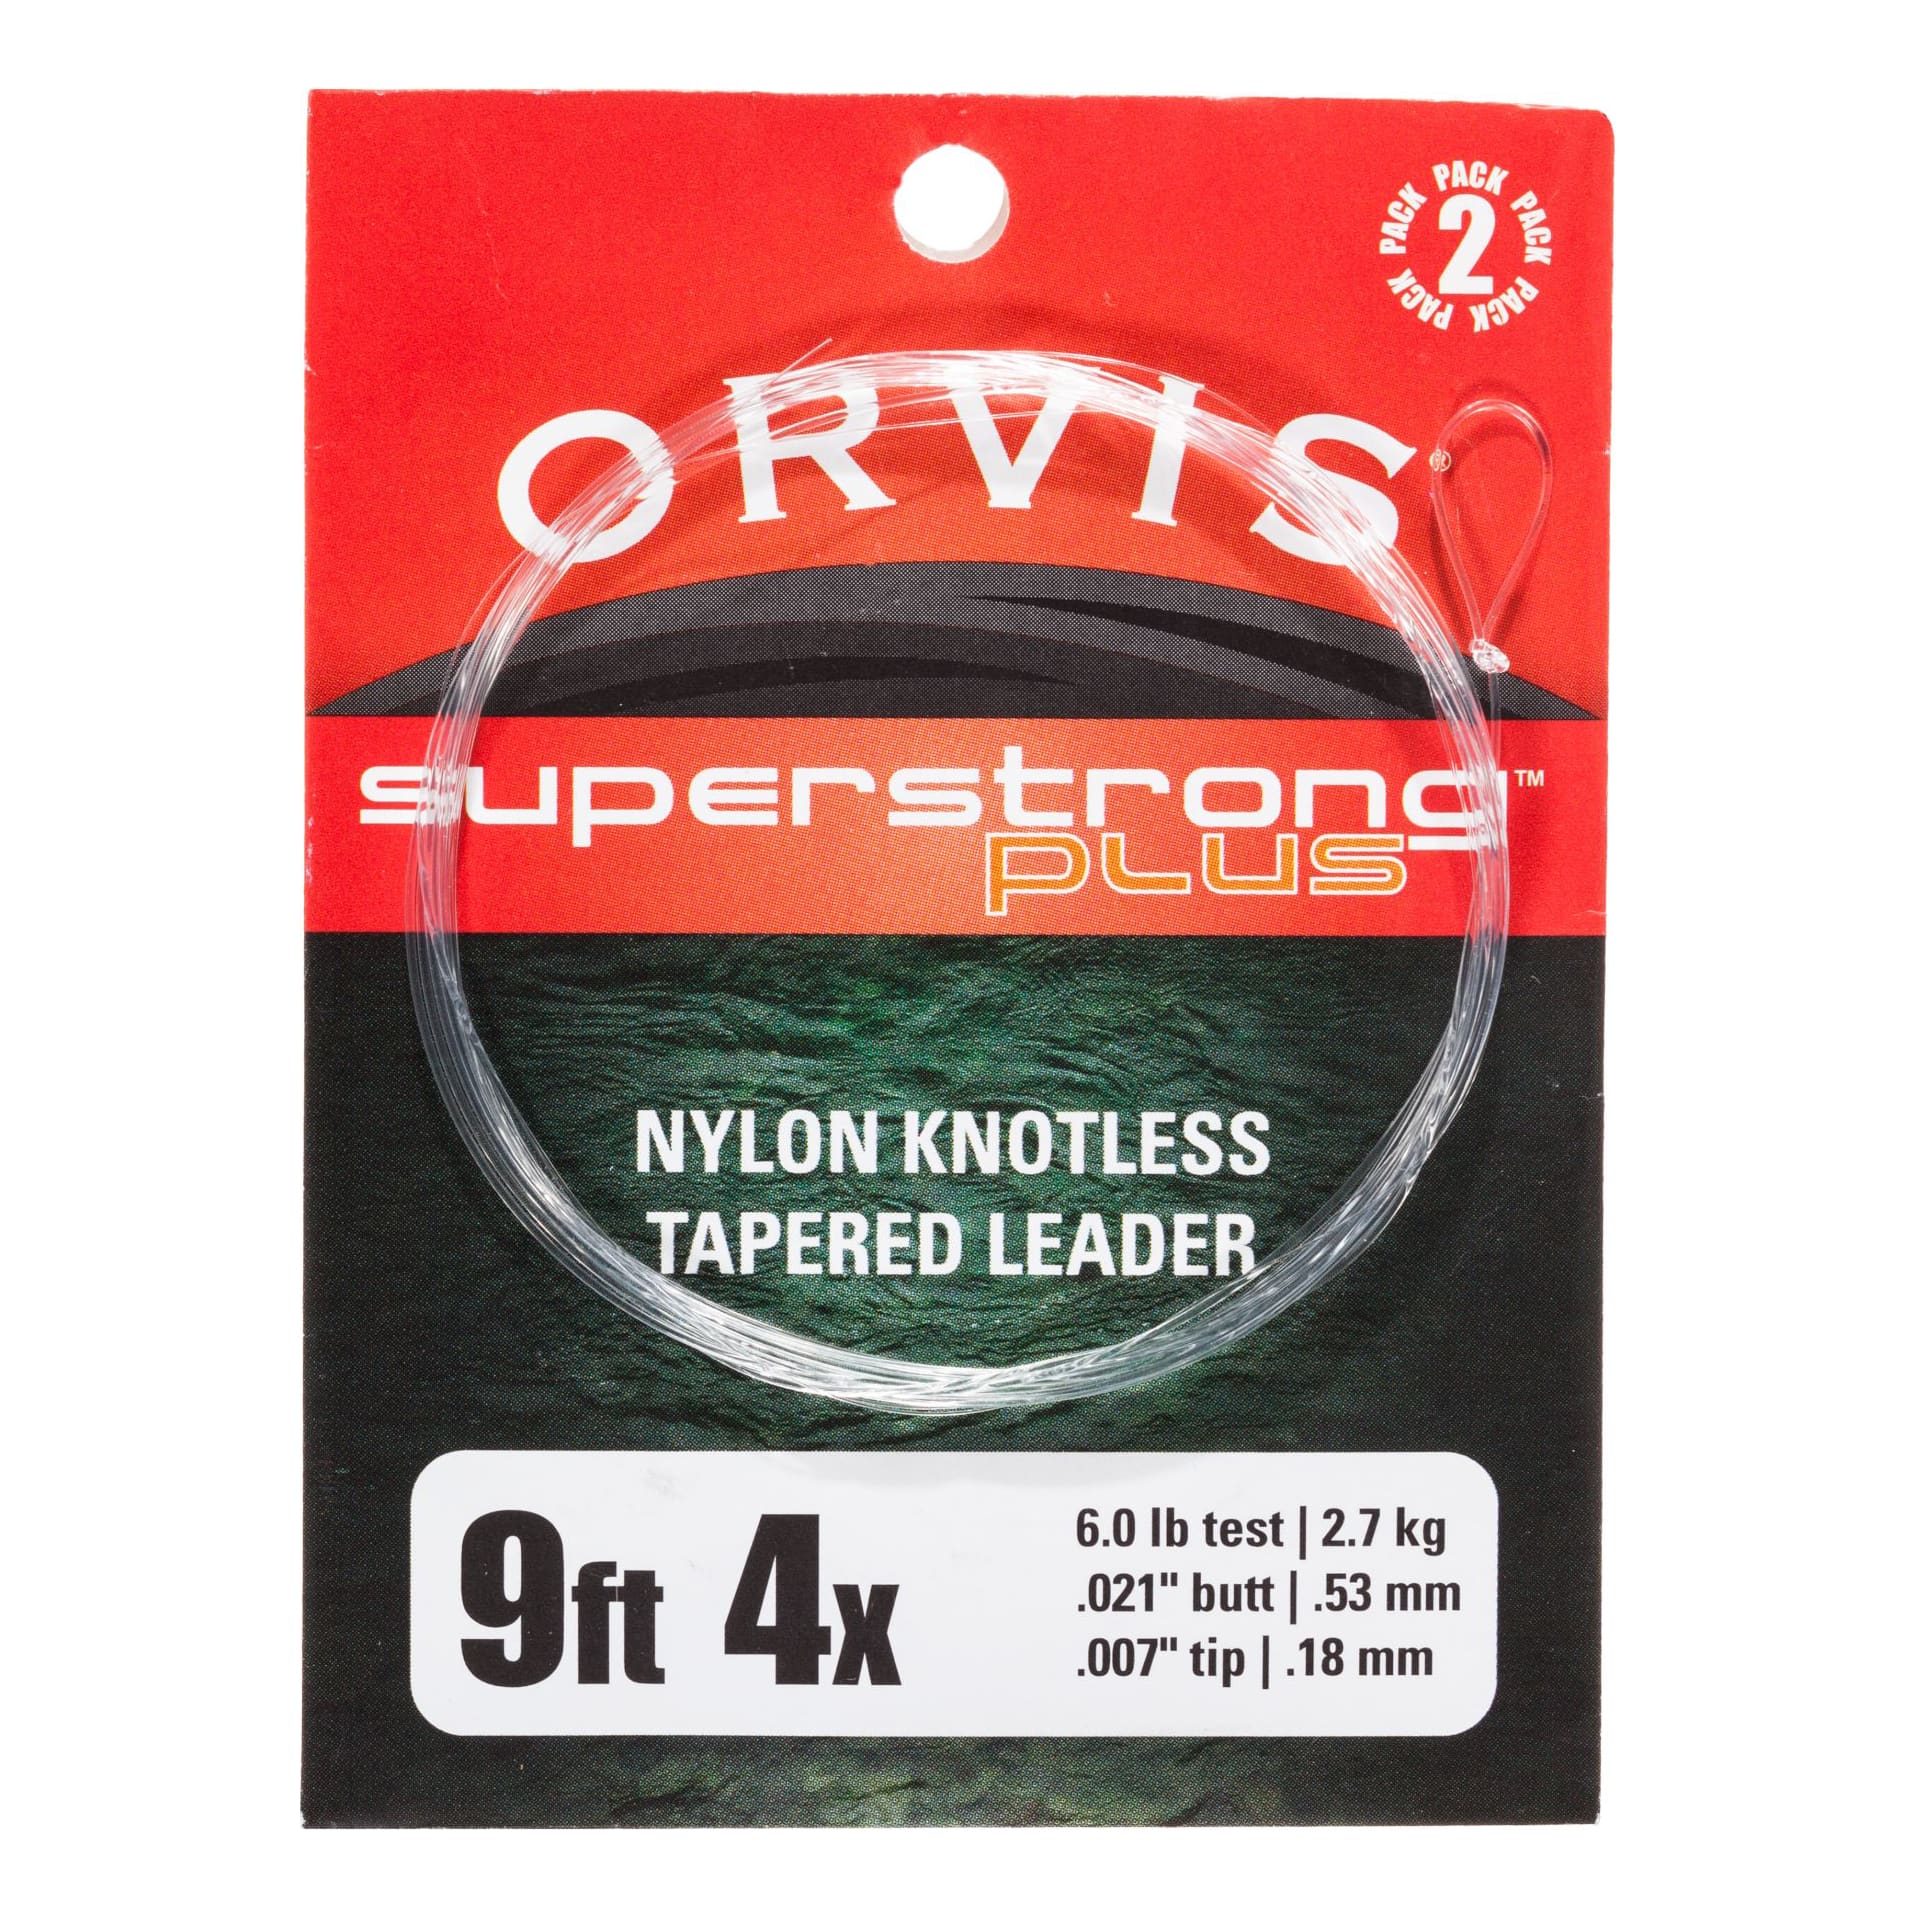 Orvis® Super Strong Plus Nylon Leader